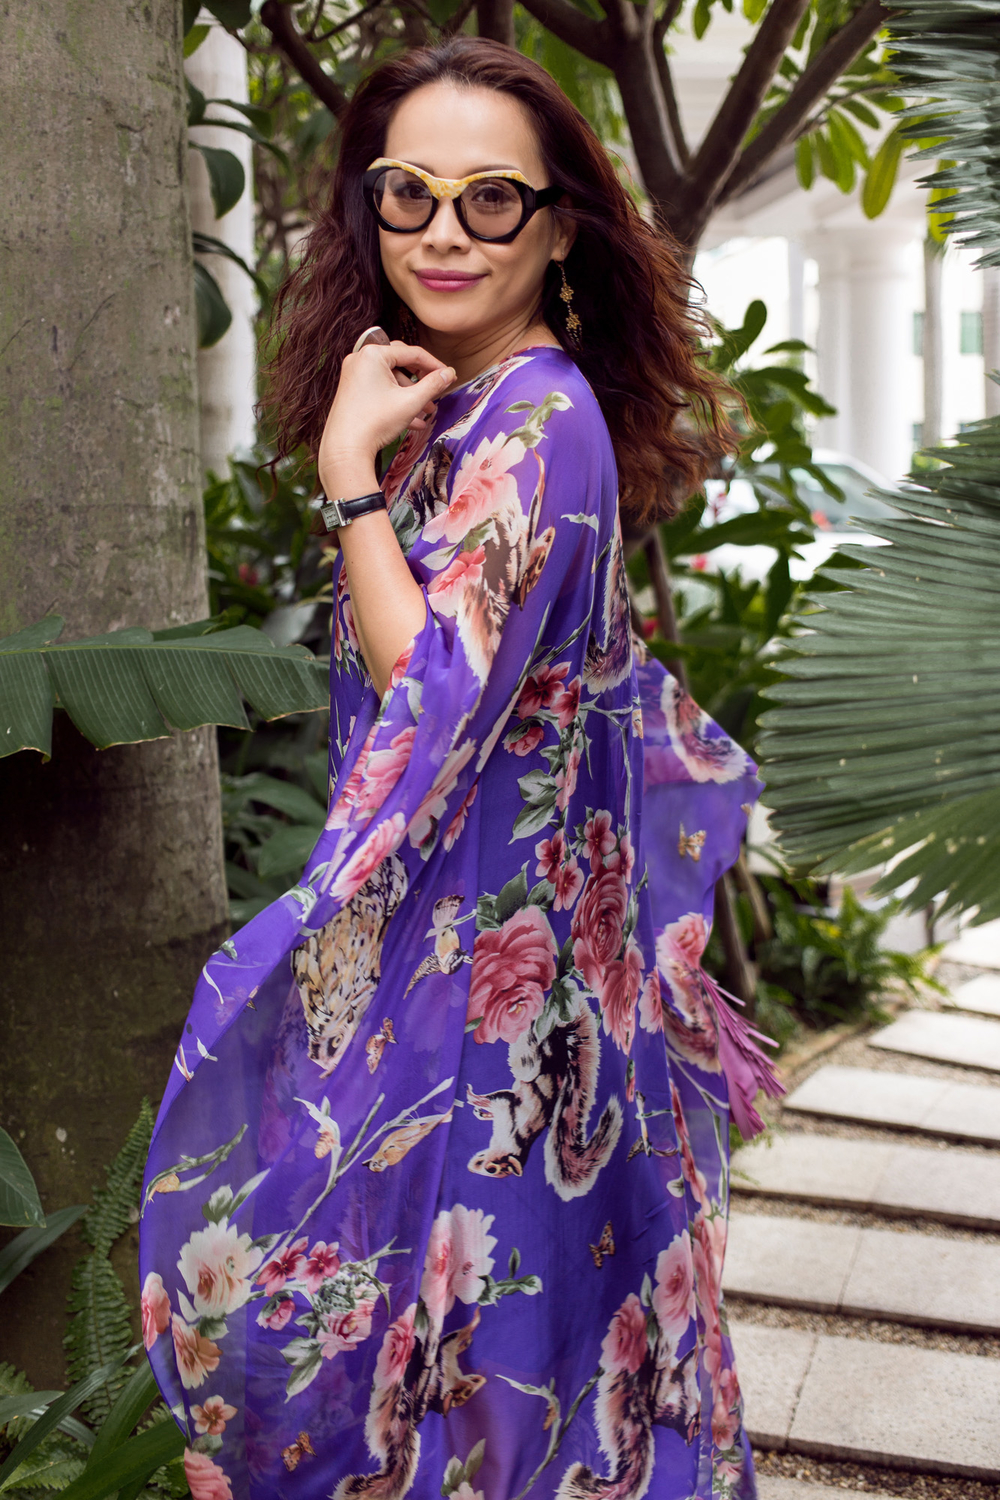 
Hoa hậu Việt Nam 1998 - Ngọc Khánh rực rỡ với sắc tím phối cùng hoạ tiết hoa màu hồng ngọt ngào. 